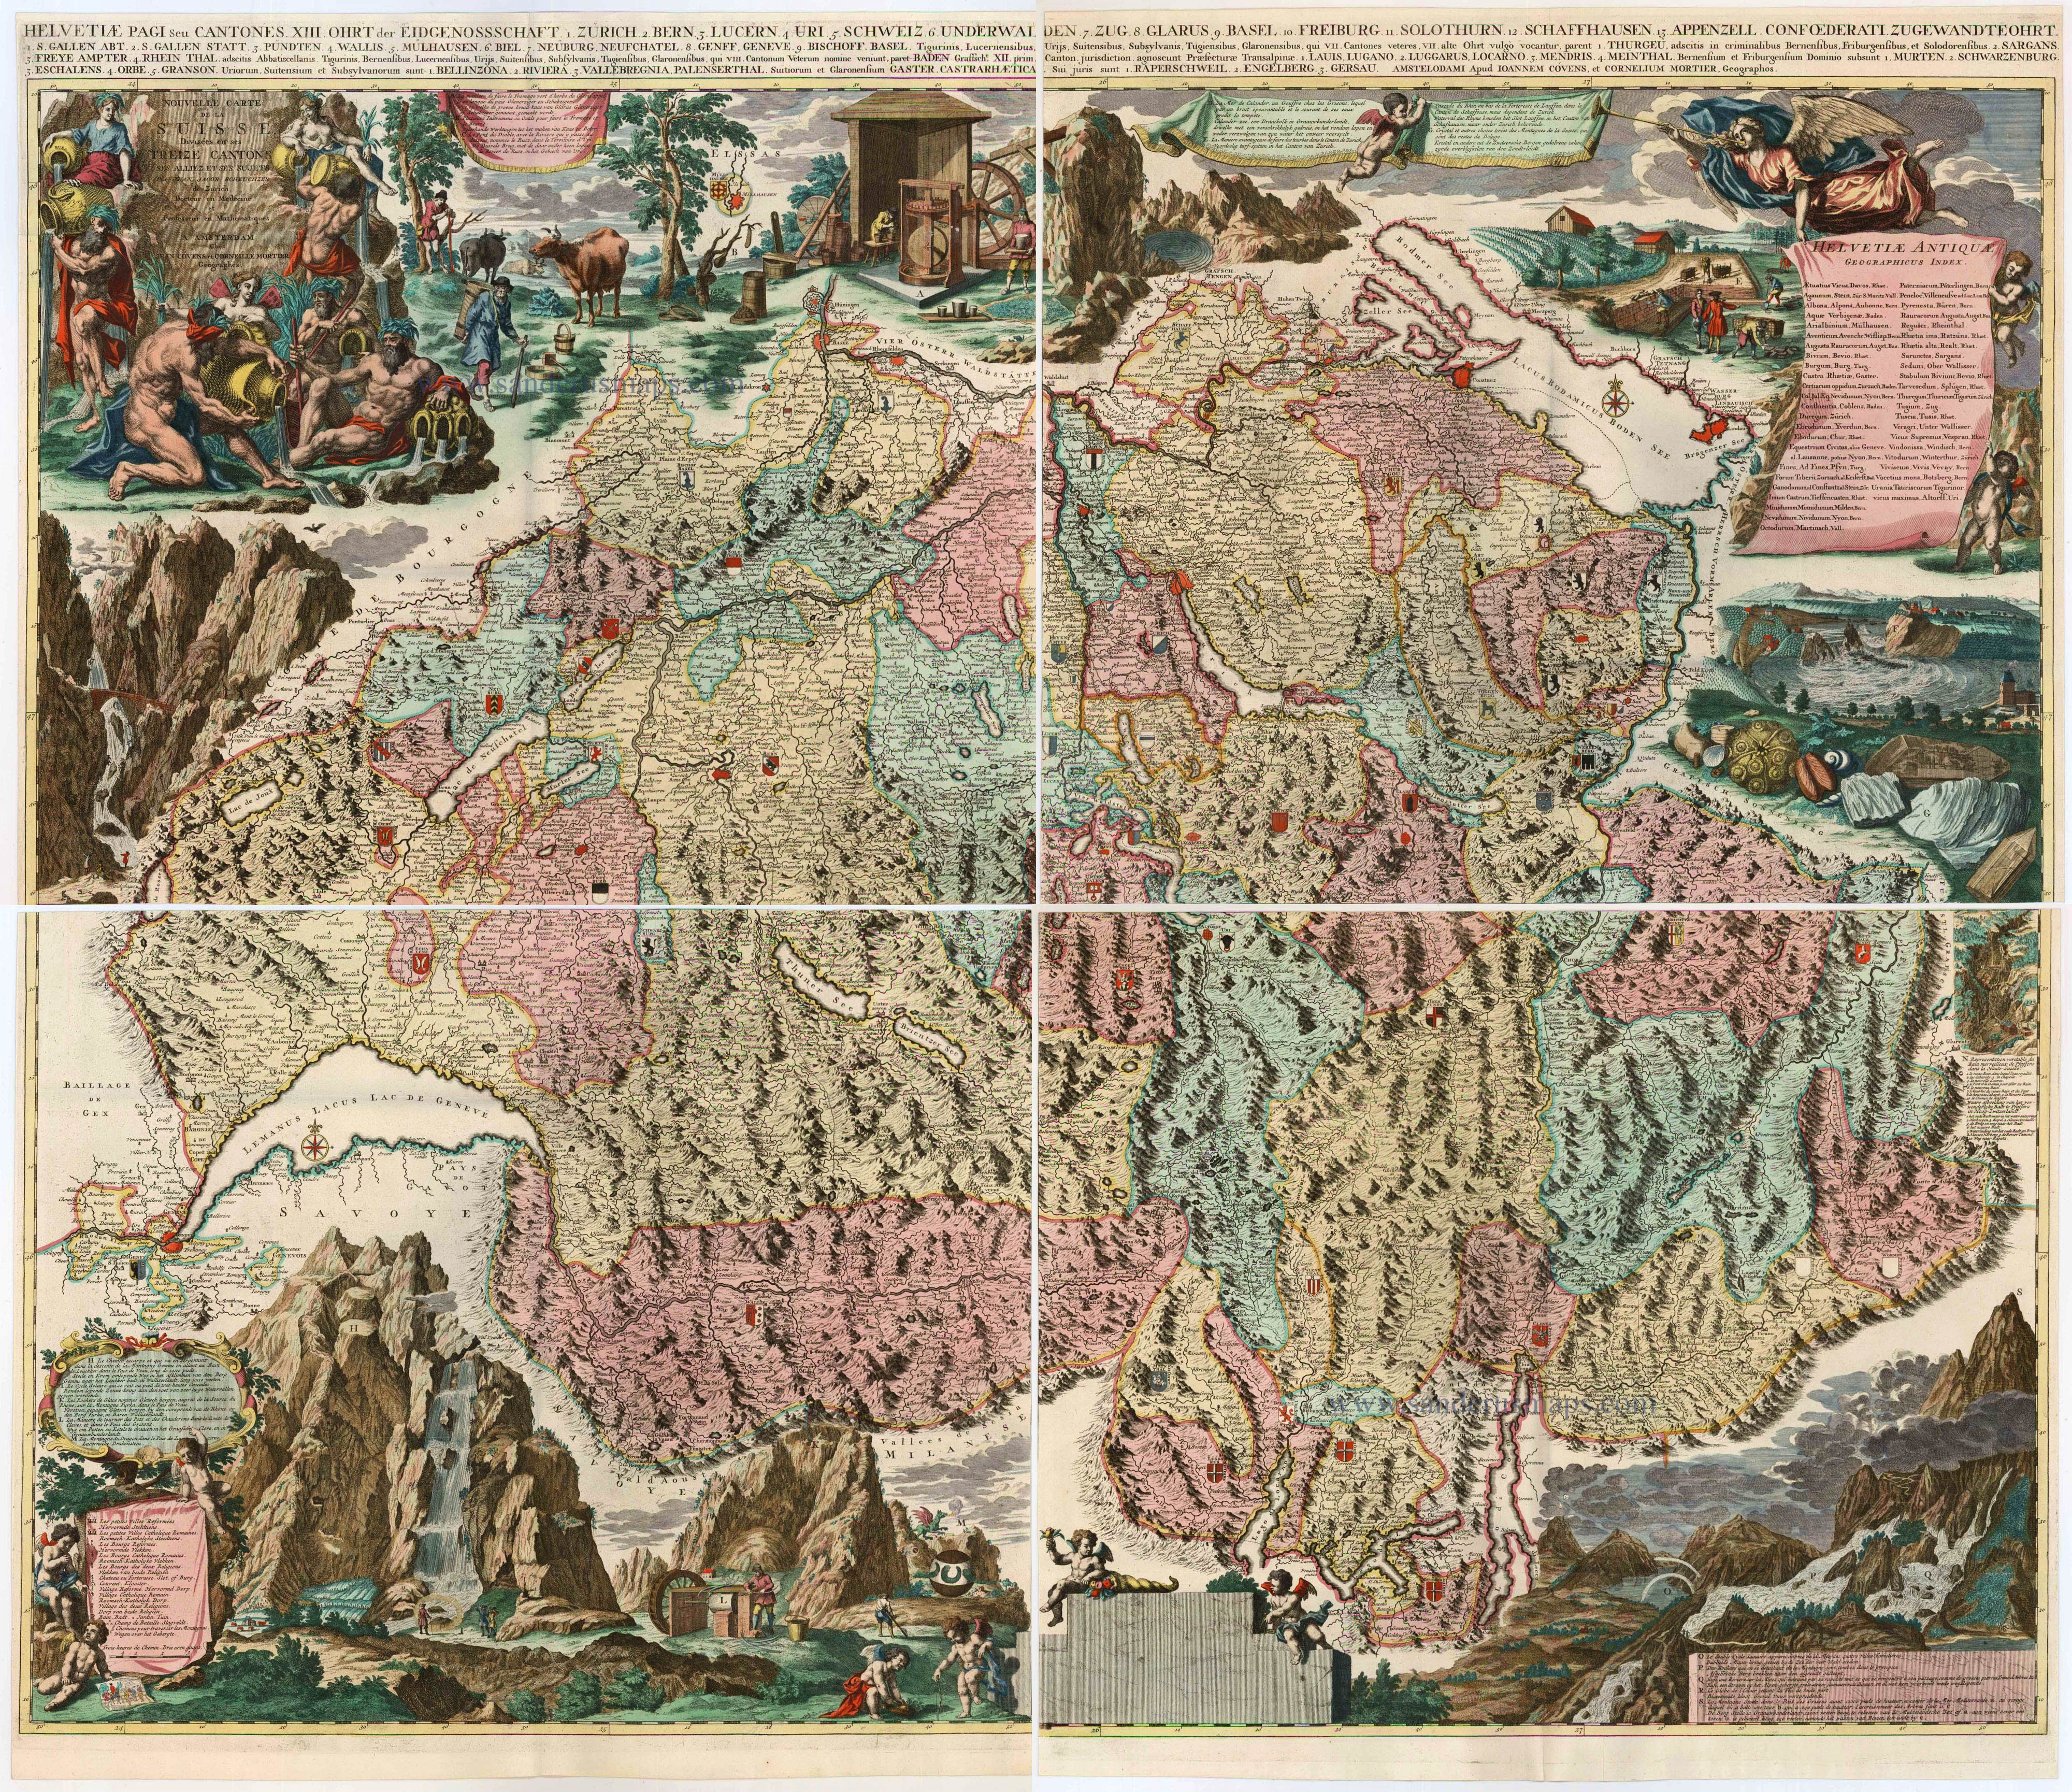 Old, antique wall map of Switzerland by J. J. Scheuchzer 